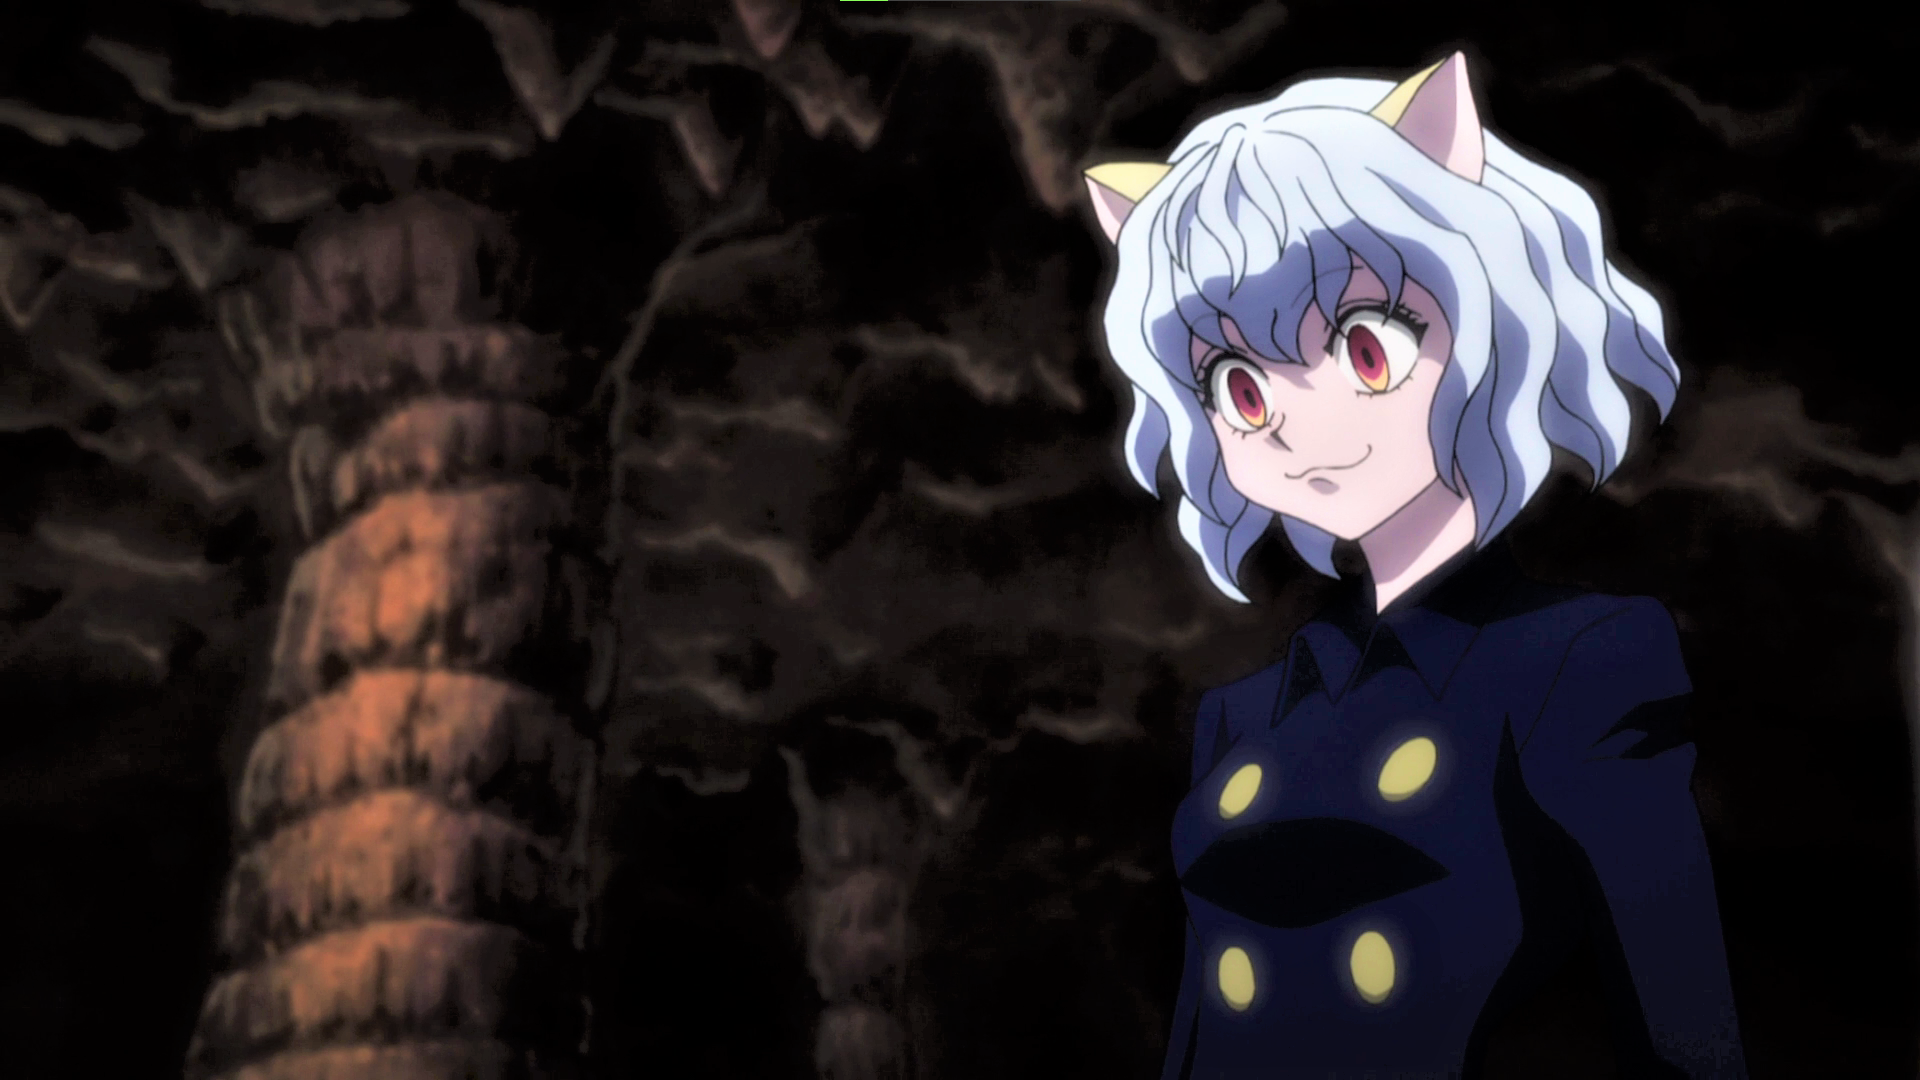 Anime 1920x1080 Neferpitou Hunter x Hunter white hair cat ears pink eyes smiling anime Anime screenshot anime girls cat girl short hair